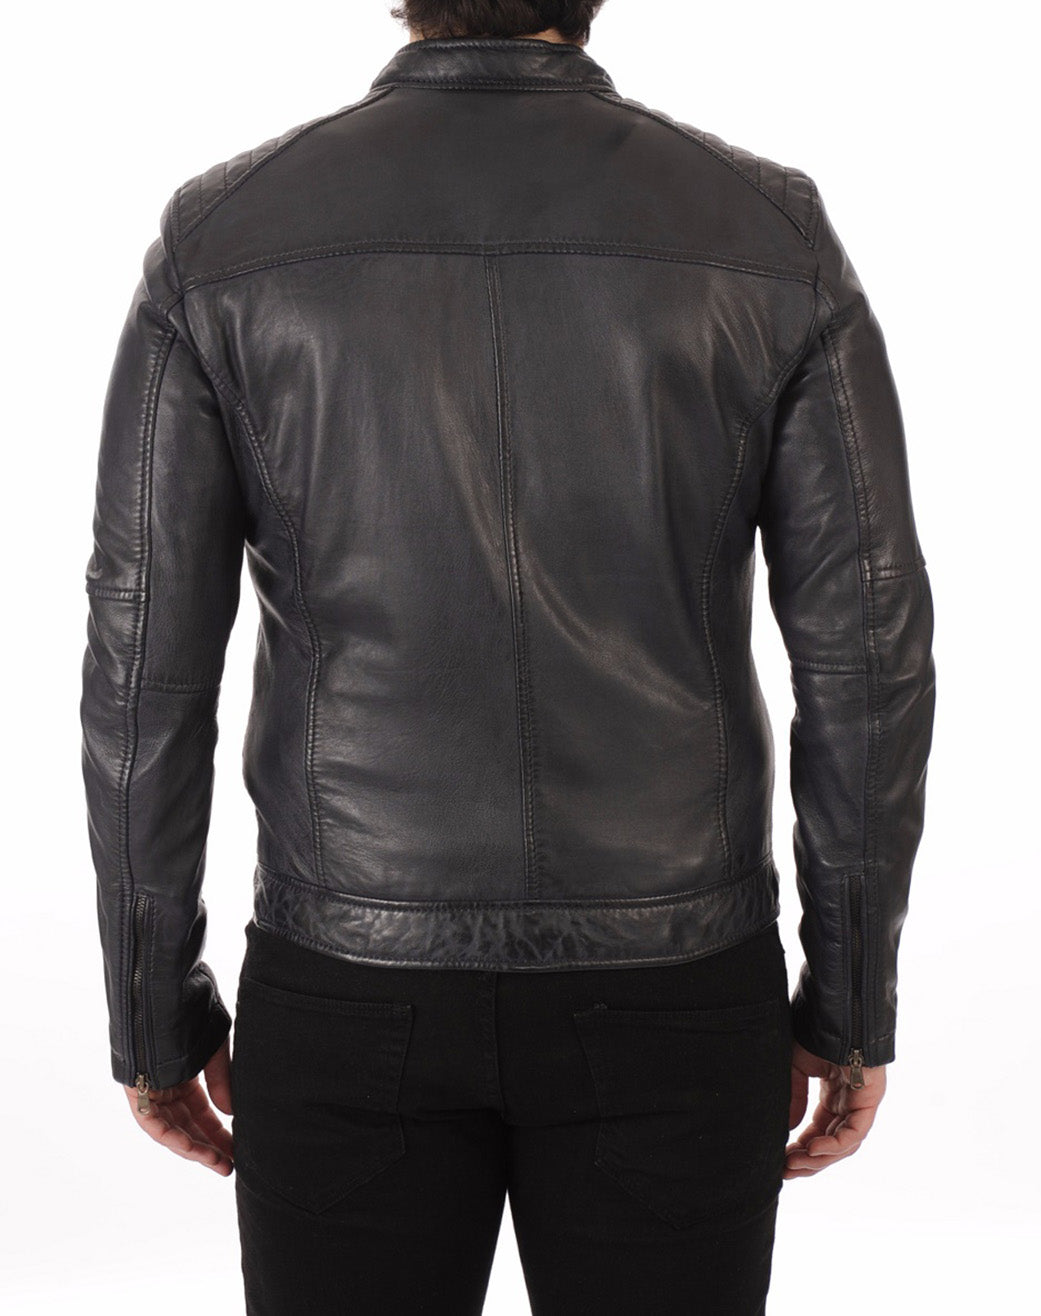 Men Lambskin Genuine Leather Jacket MJ191 SkinOutfit